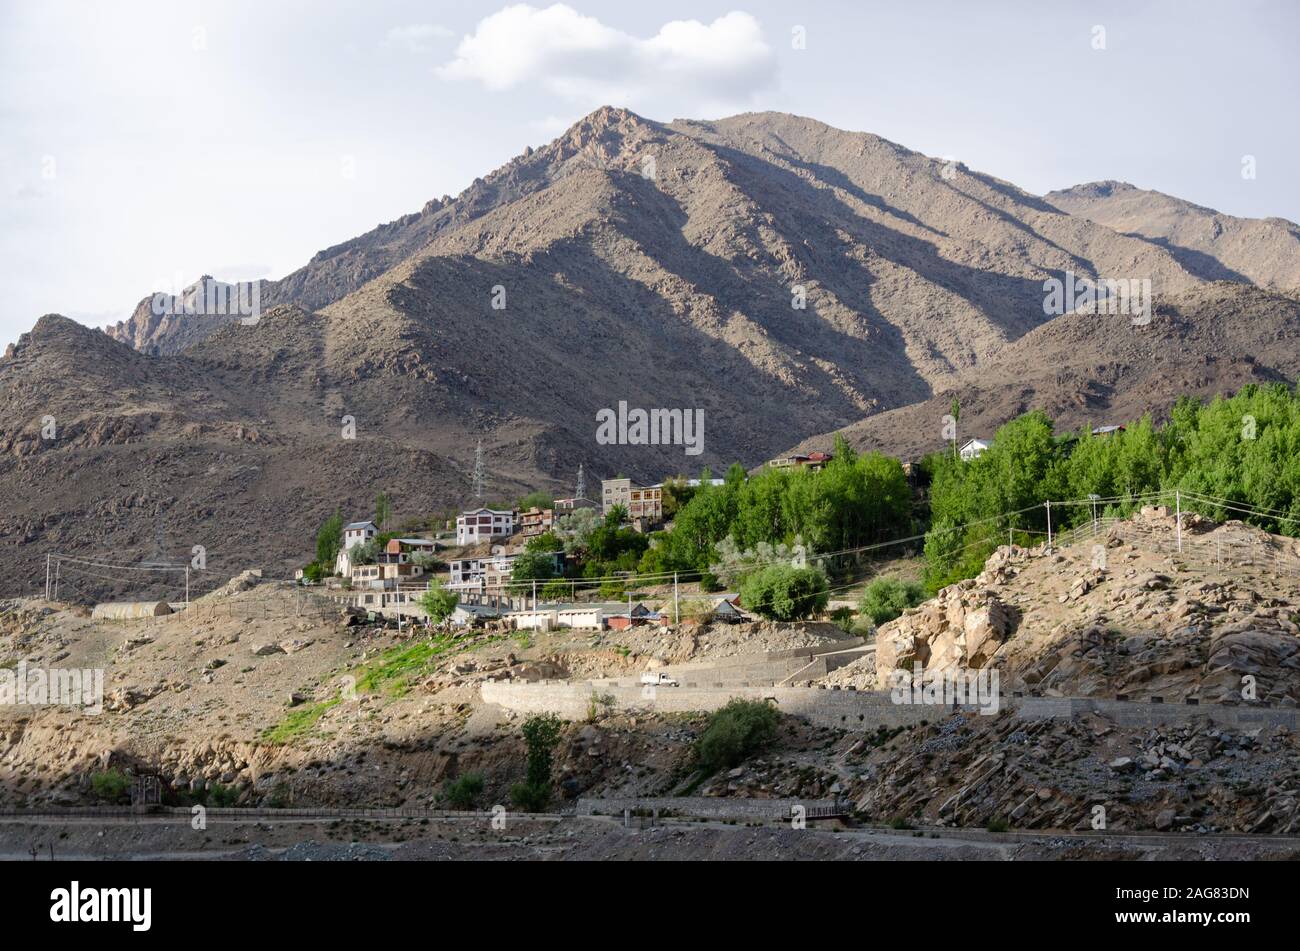 Tagesansicht der Stadt Kargil, Ladakh, Indien während der Sommersaison. Stockfoto